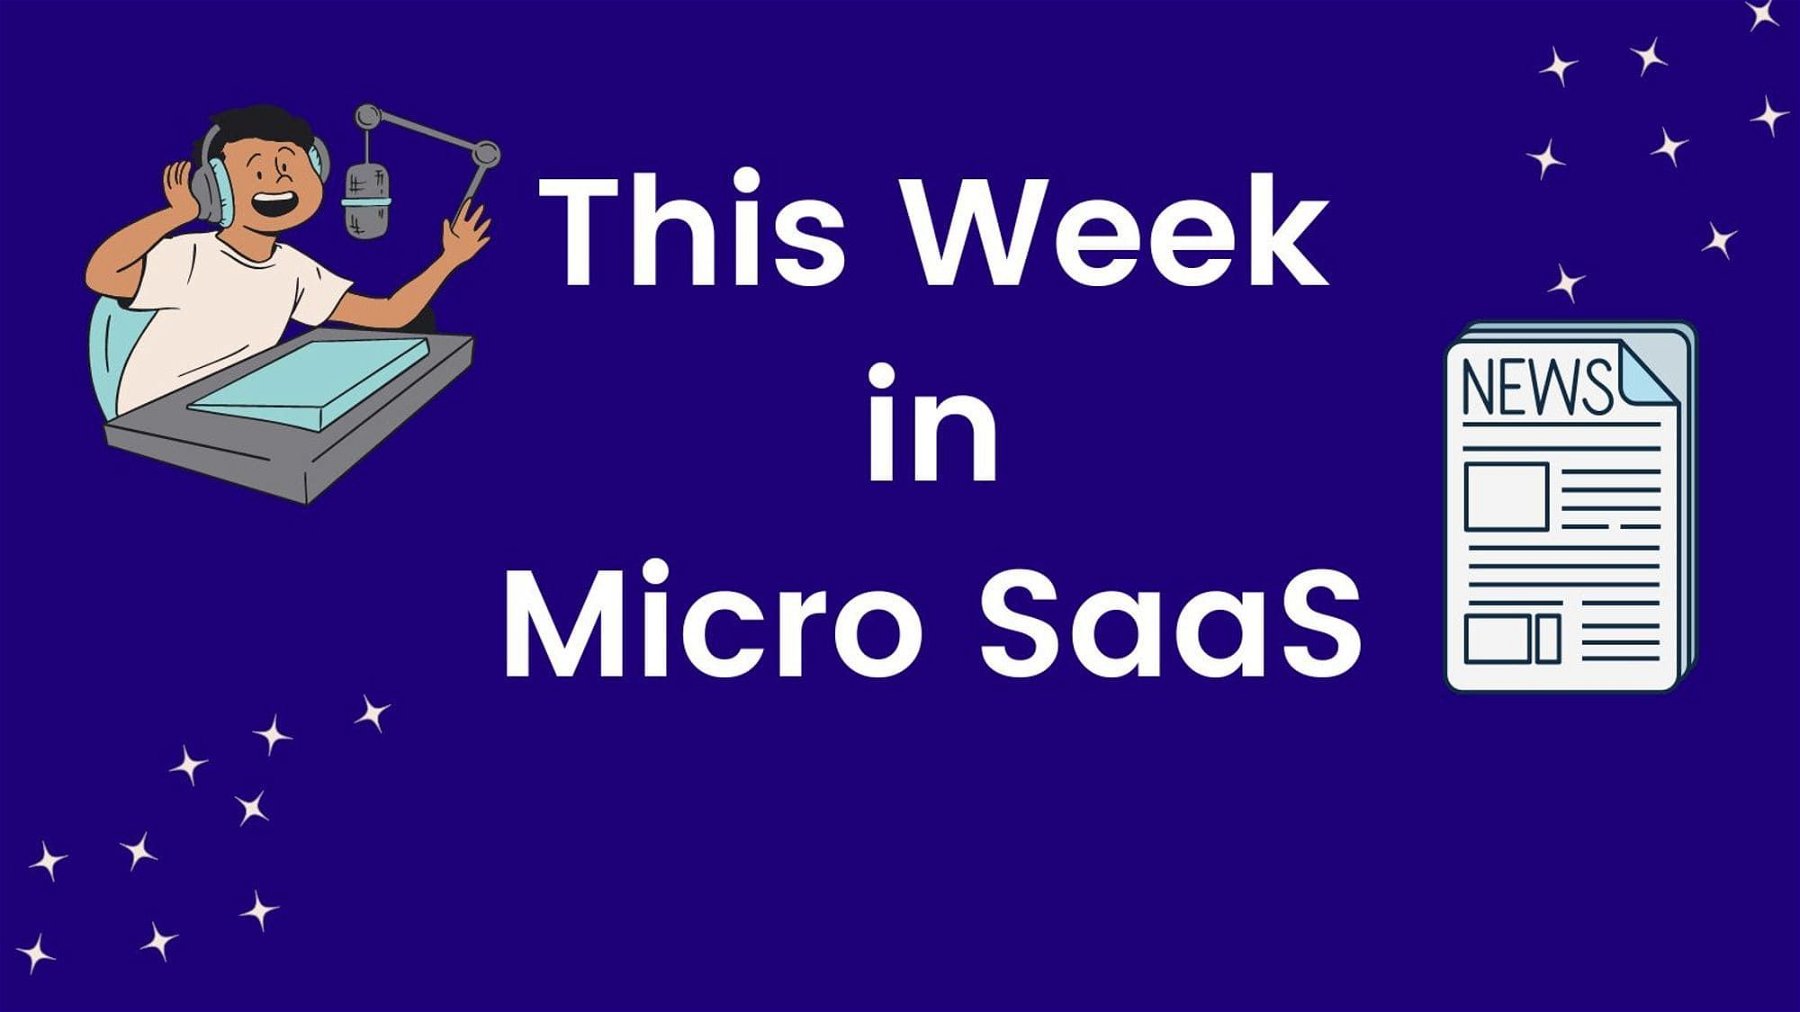 This week in Micro SaaS -$2300 Sales in the first week